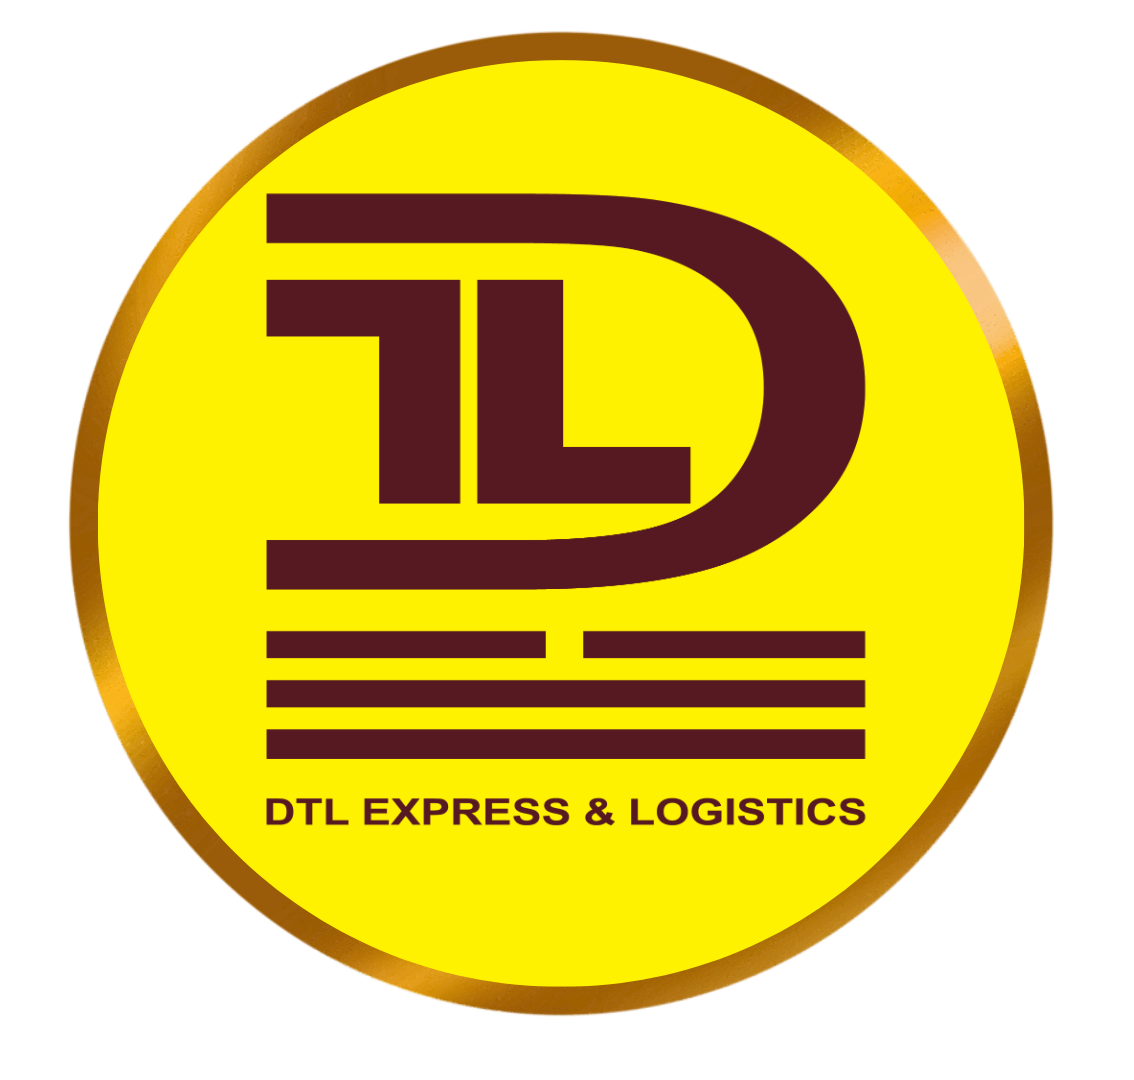 DTL EXPRESS & LOGISTICS logo